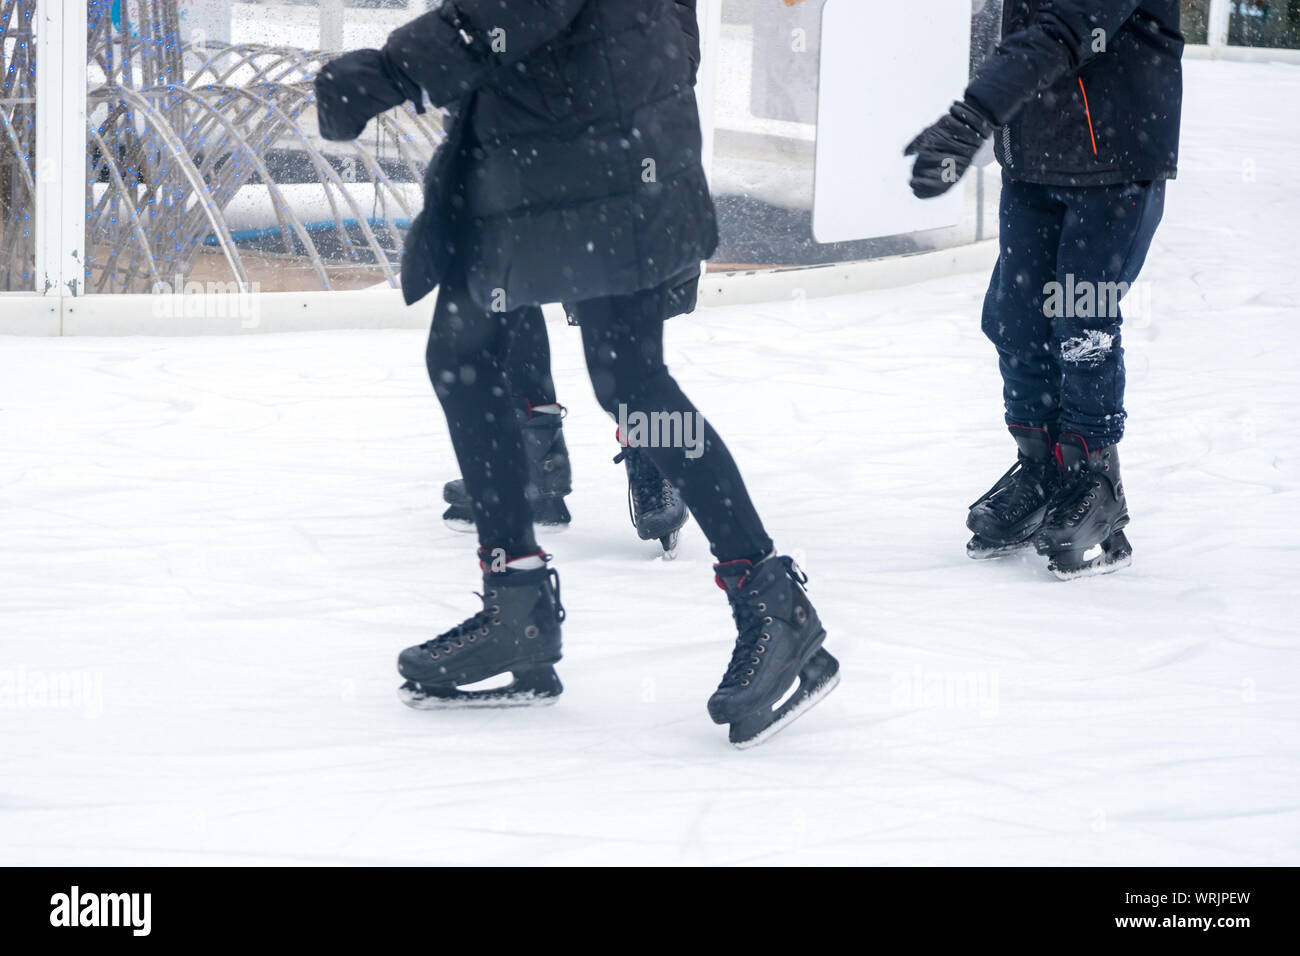 Detailansicht von Schlittschuhen auf der Eisbahn für Bewohner. Eislaufen im Winter. Unterhaltung. Stockfoto